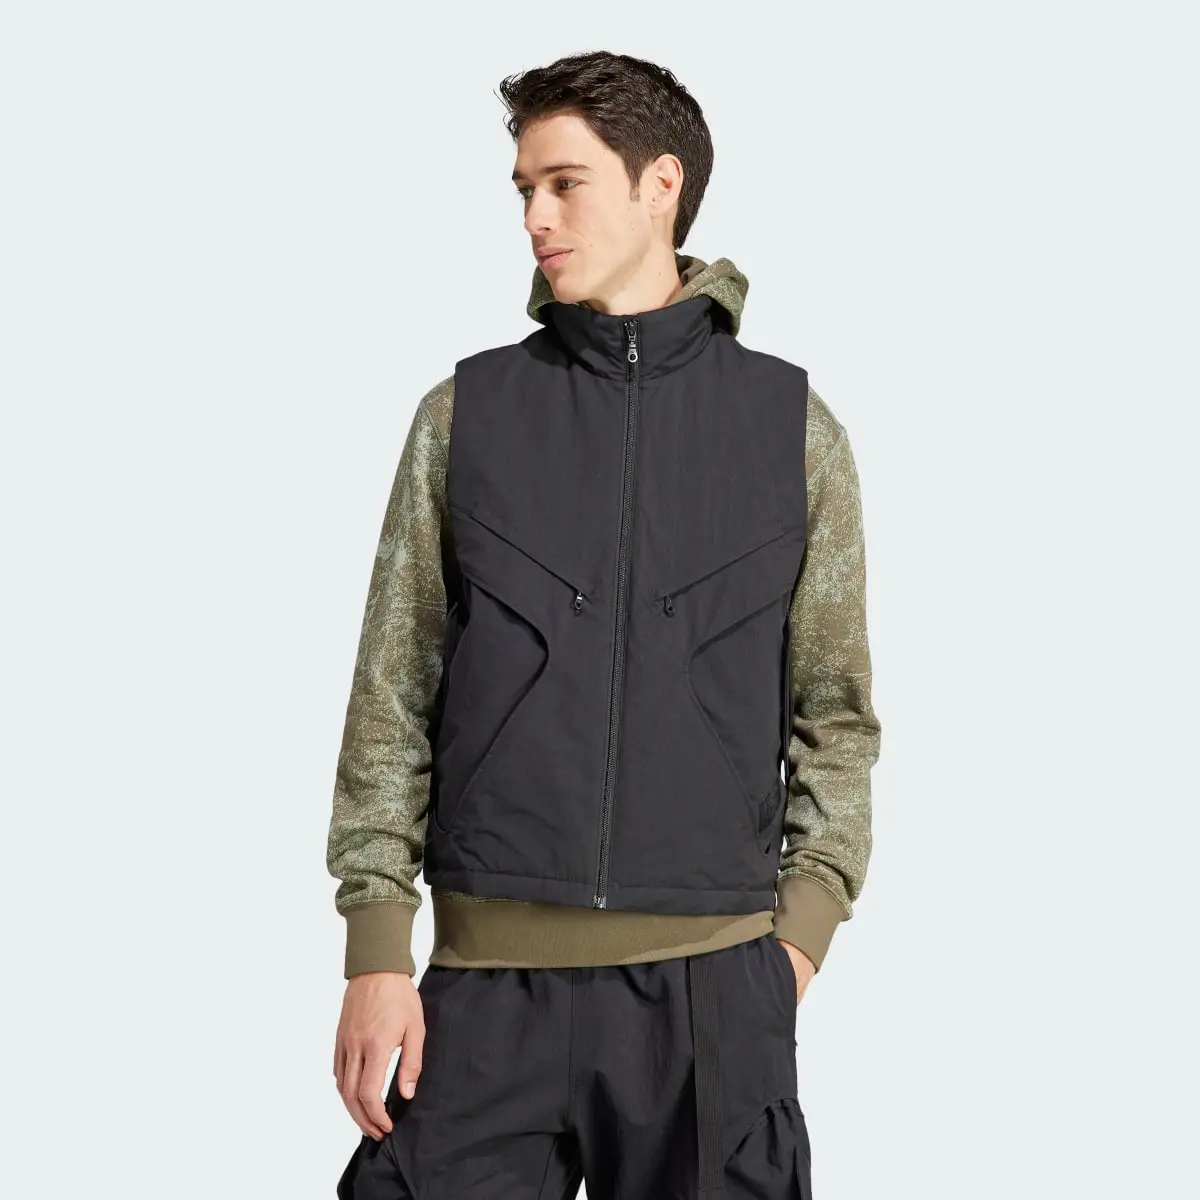 Adidas Adventure Premium Multi-Pocket Vest. 2